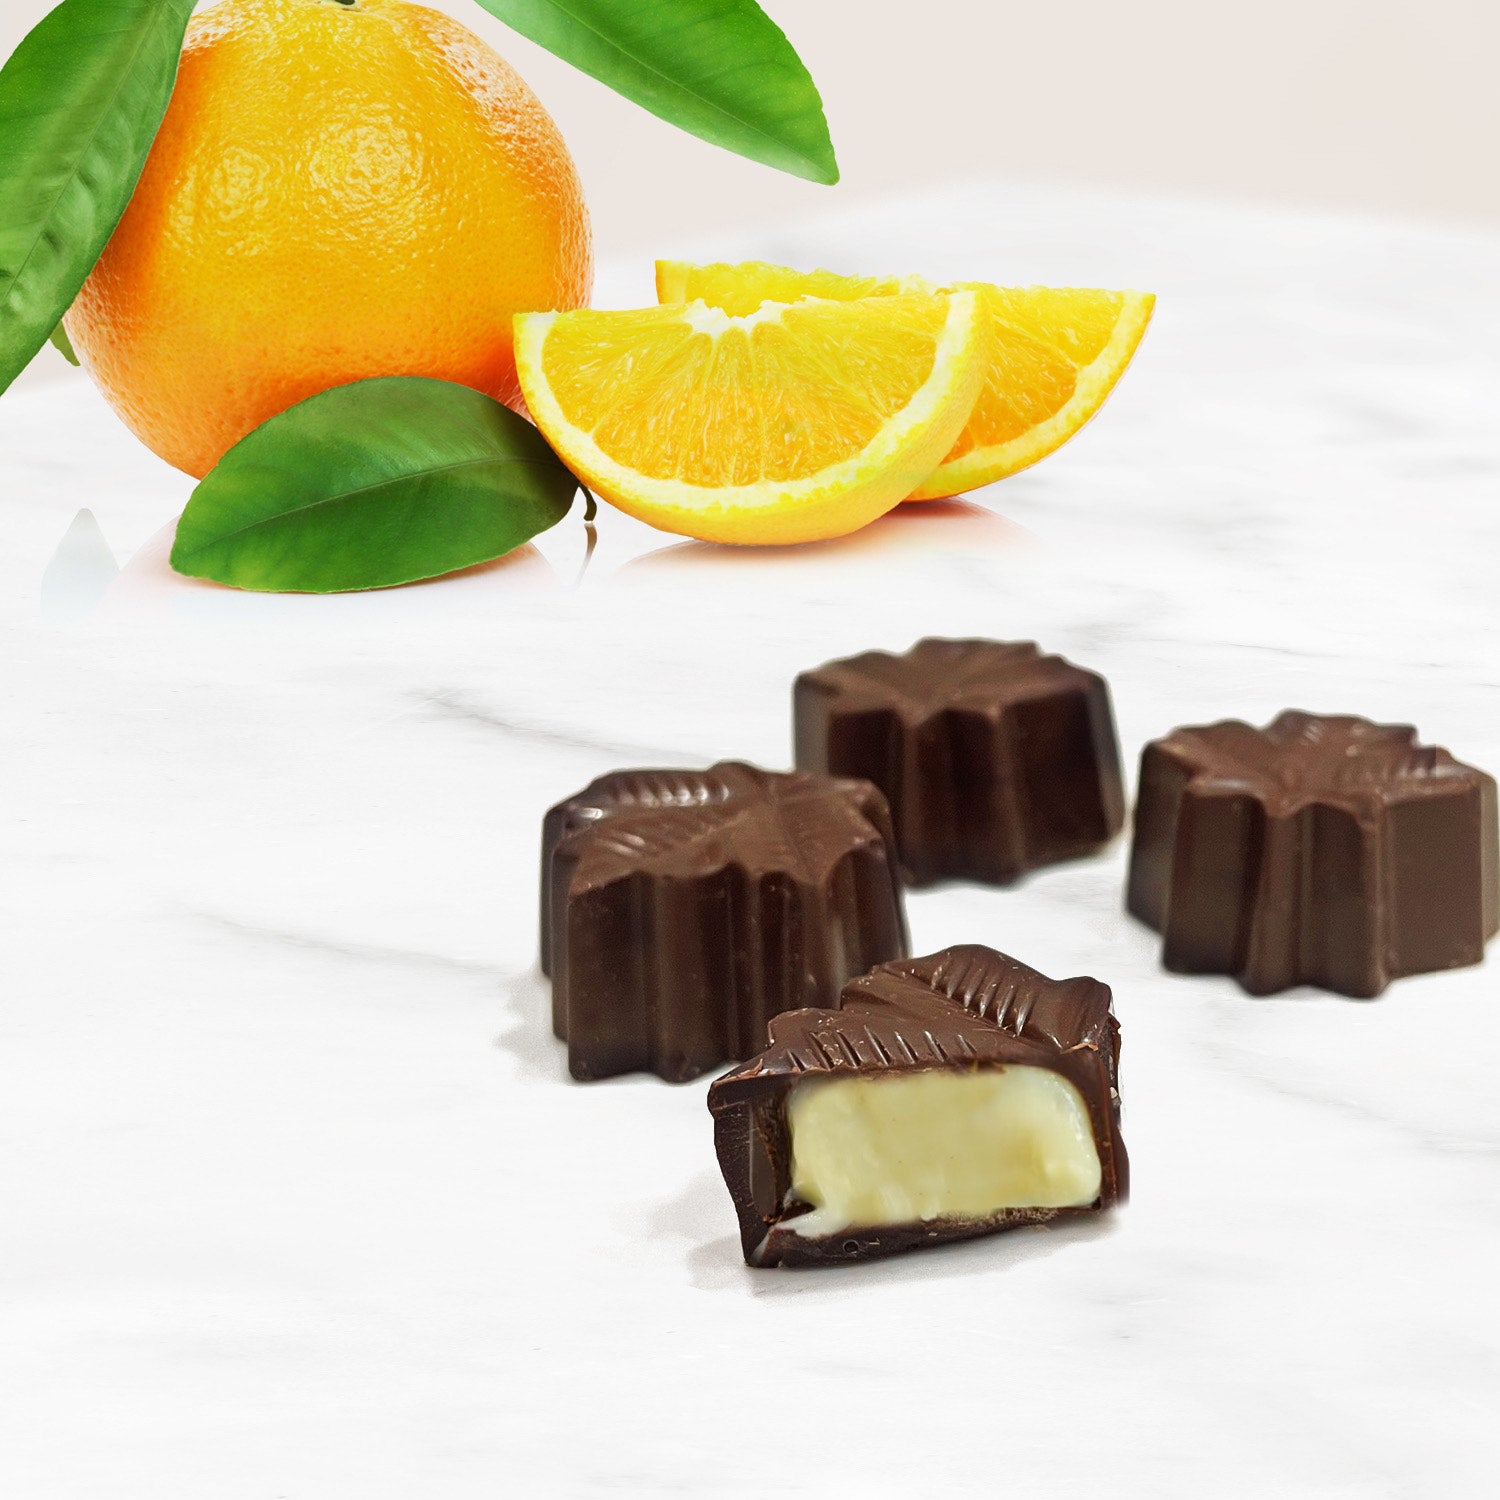 Chocolat de Luxe en ligne : fin et raffiné › Chocolaterie Thil